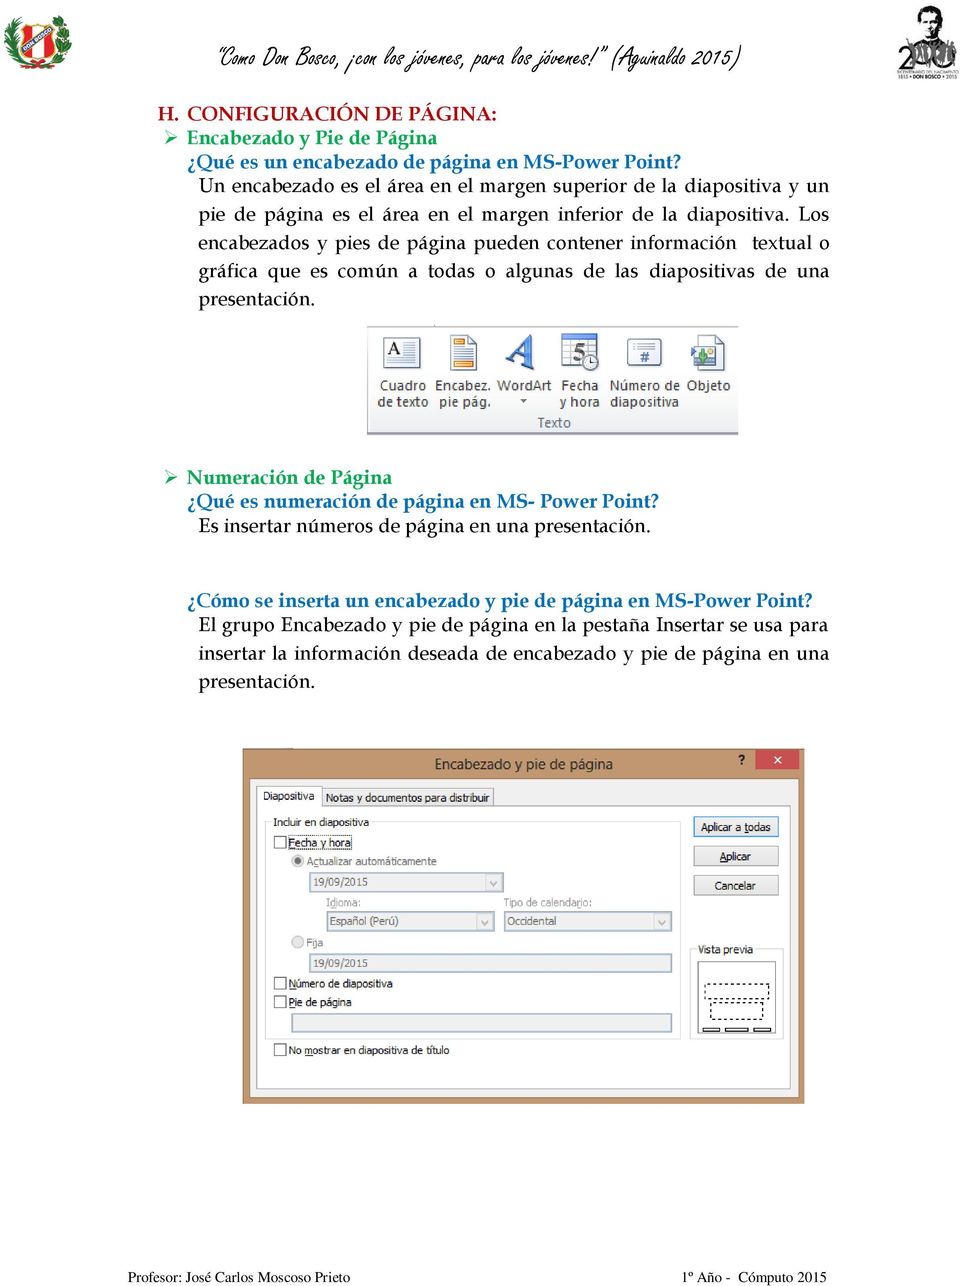 Los encabezados y pies de página pueden contener información textual o gráfica que es común a todas o algunas de las diapositivas de una presentación.